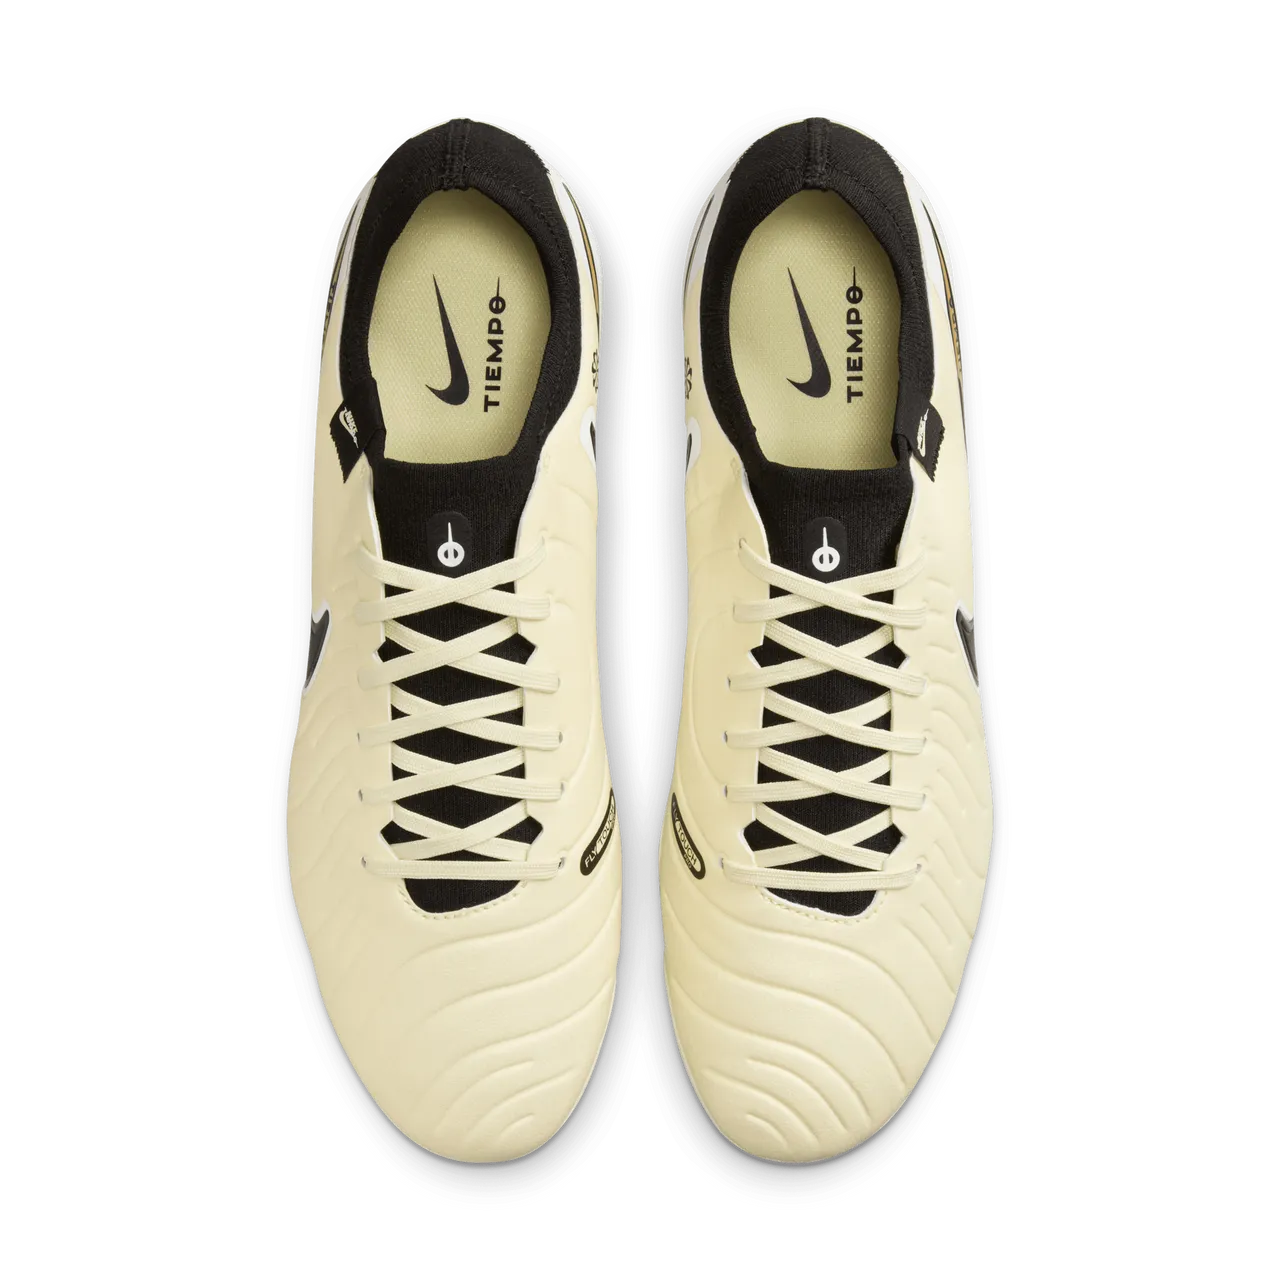 Nike Tiempo Legend 10 Pro Low Top Fußballschuh für normalen Rasen - Gelb